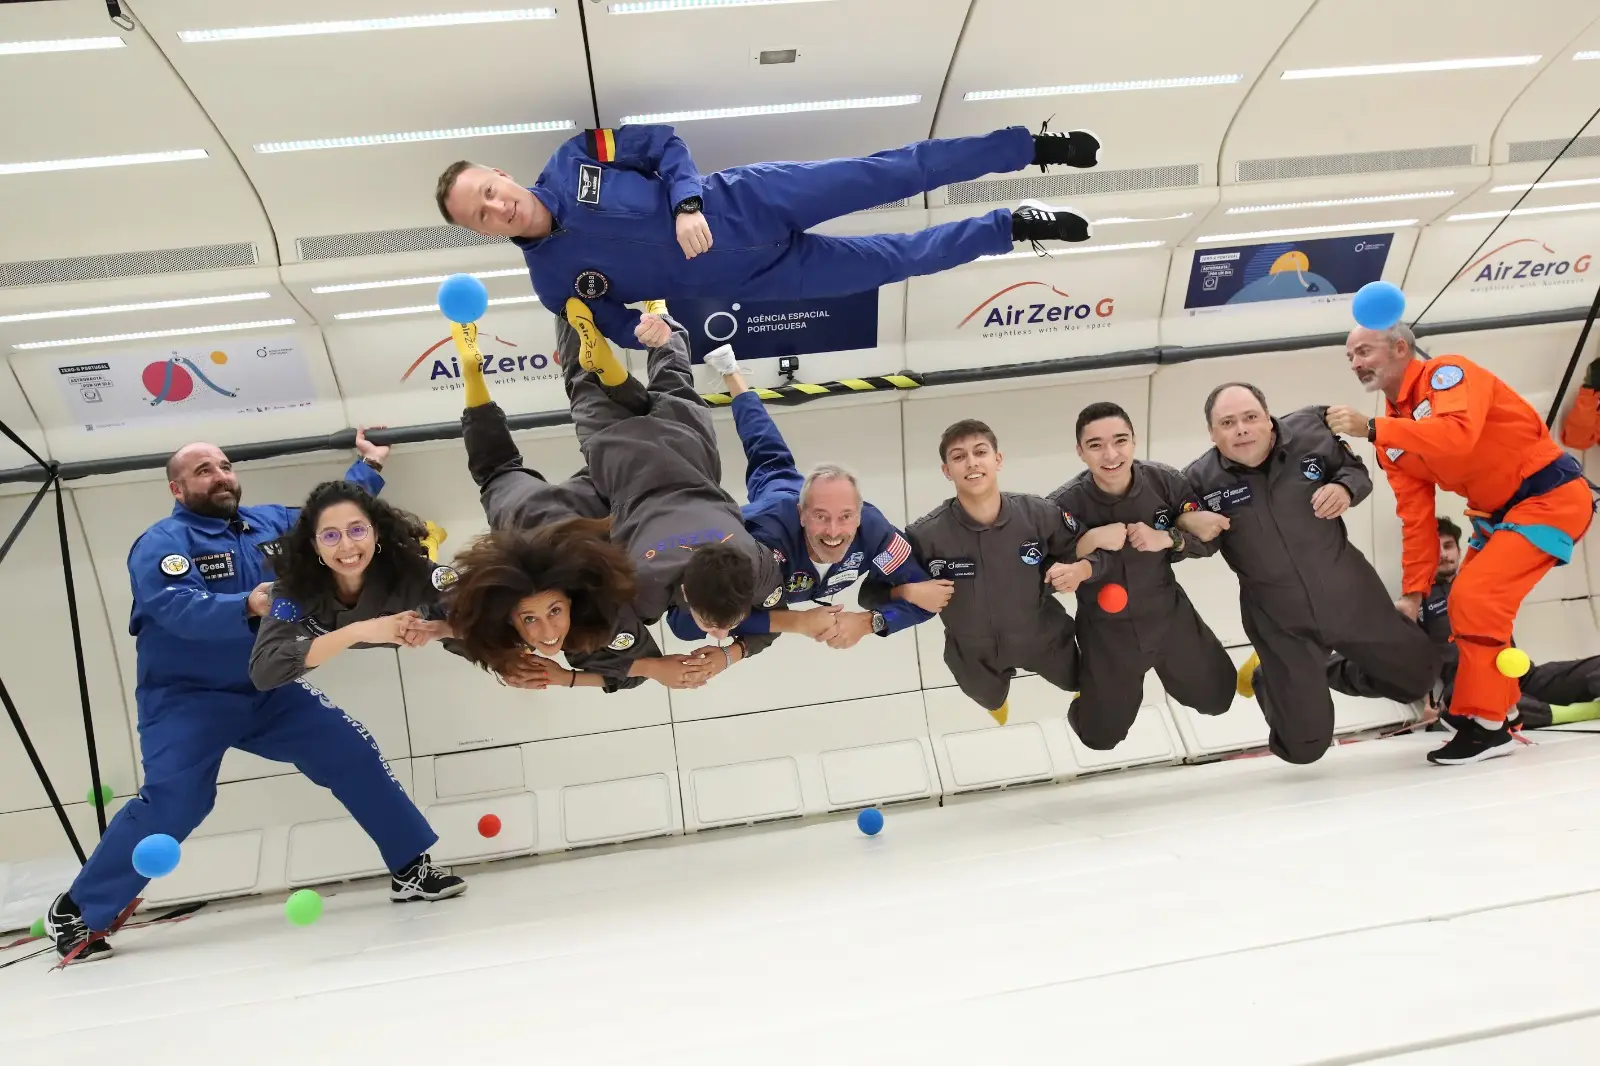 O astronauta Matthias Maurer acompanhou um grupo de 31 alunos no primeiro voo parabólico realizado em Portugal Creditos: DR/NovEspace